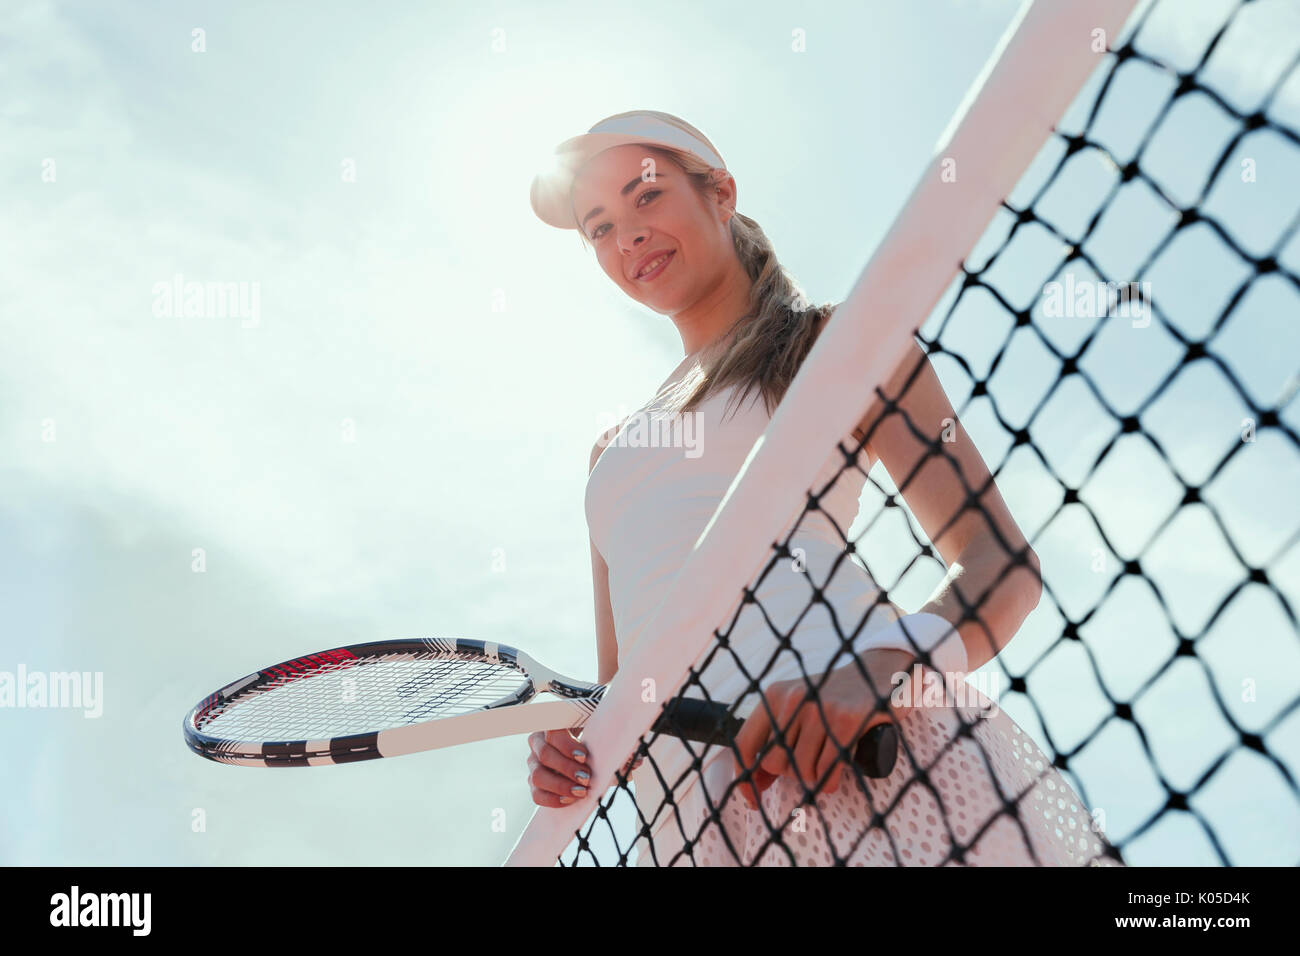 Ritratto sorridente e fiducioso di tennis femminile giocatore in possesso della racchetta da tennis presso la net sotto il cielo sereno Foto Stock